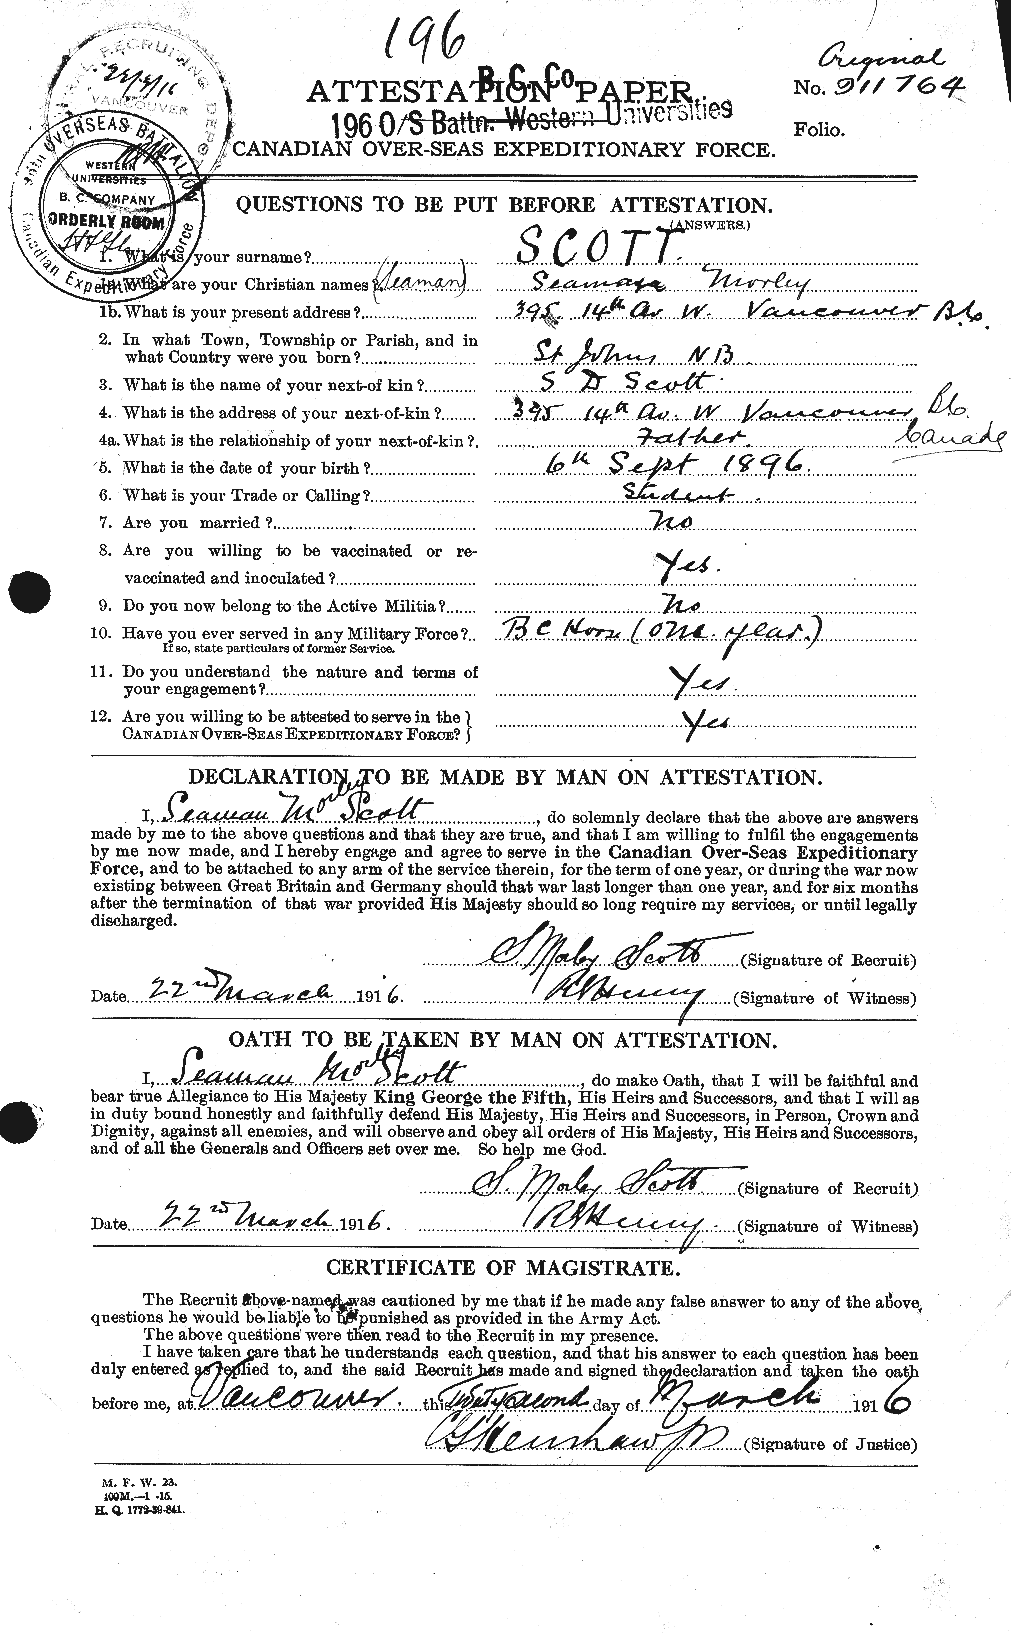 Dossiers du Personnel de la Première Guerre mondiale - CEC 088852a